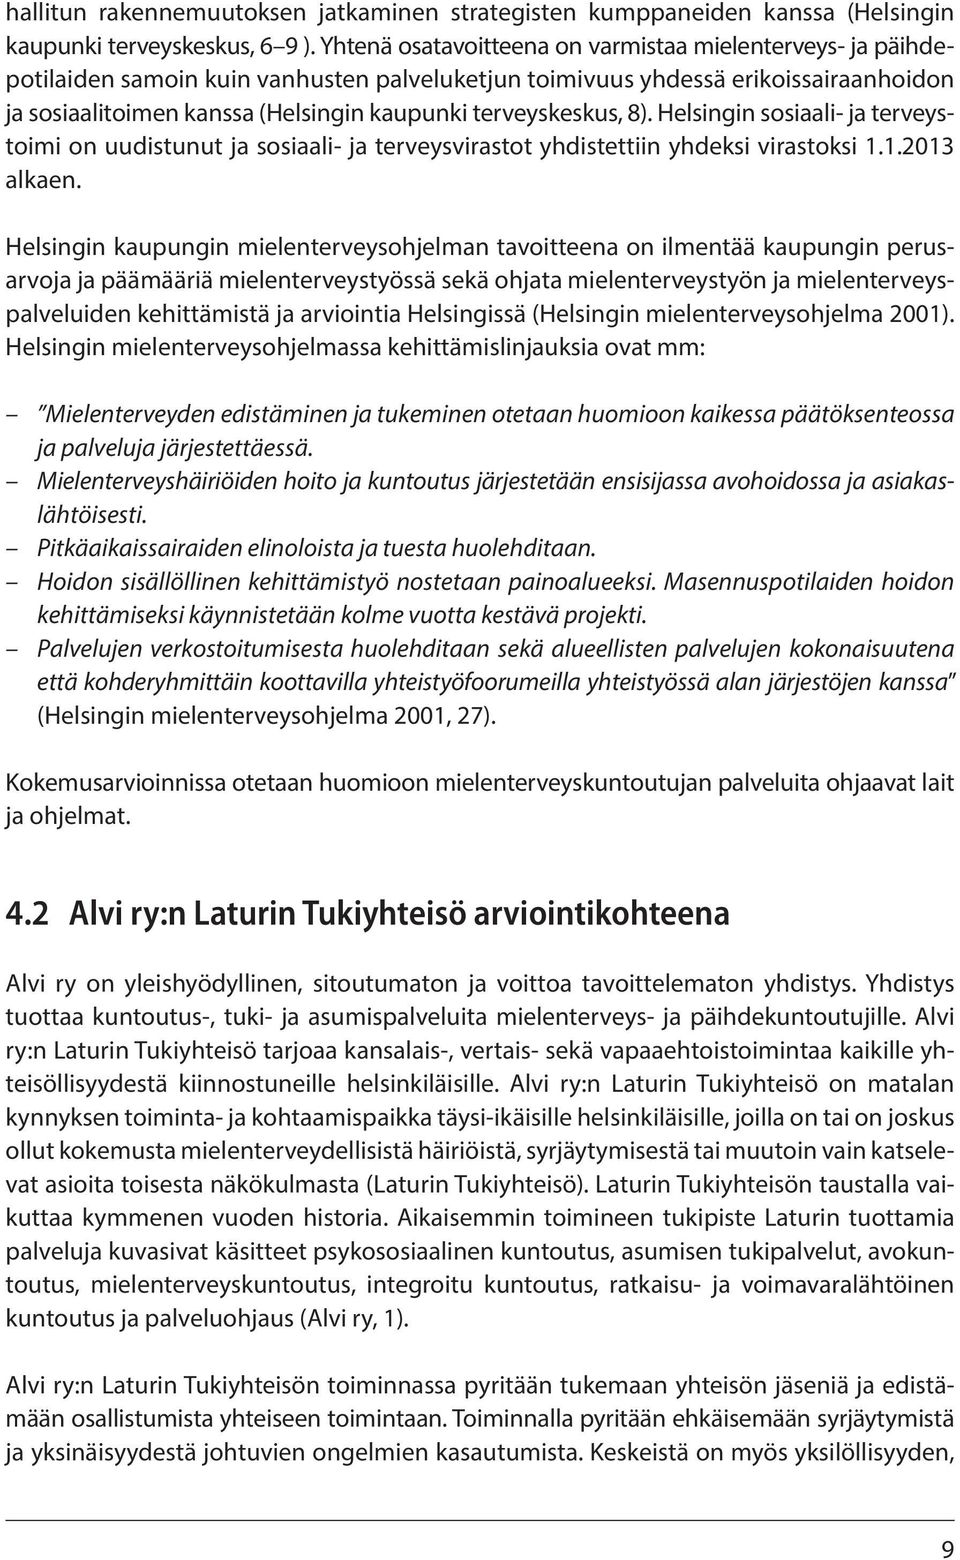 terveyskeskus, 8). Helsingin sosiaali- ja terveystoimi on uudistunut ja sosiaali- ja terveysvirastot yhdistettiin yhdeksi virastoksi 1.1.2013 alkaen.